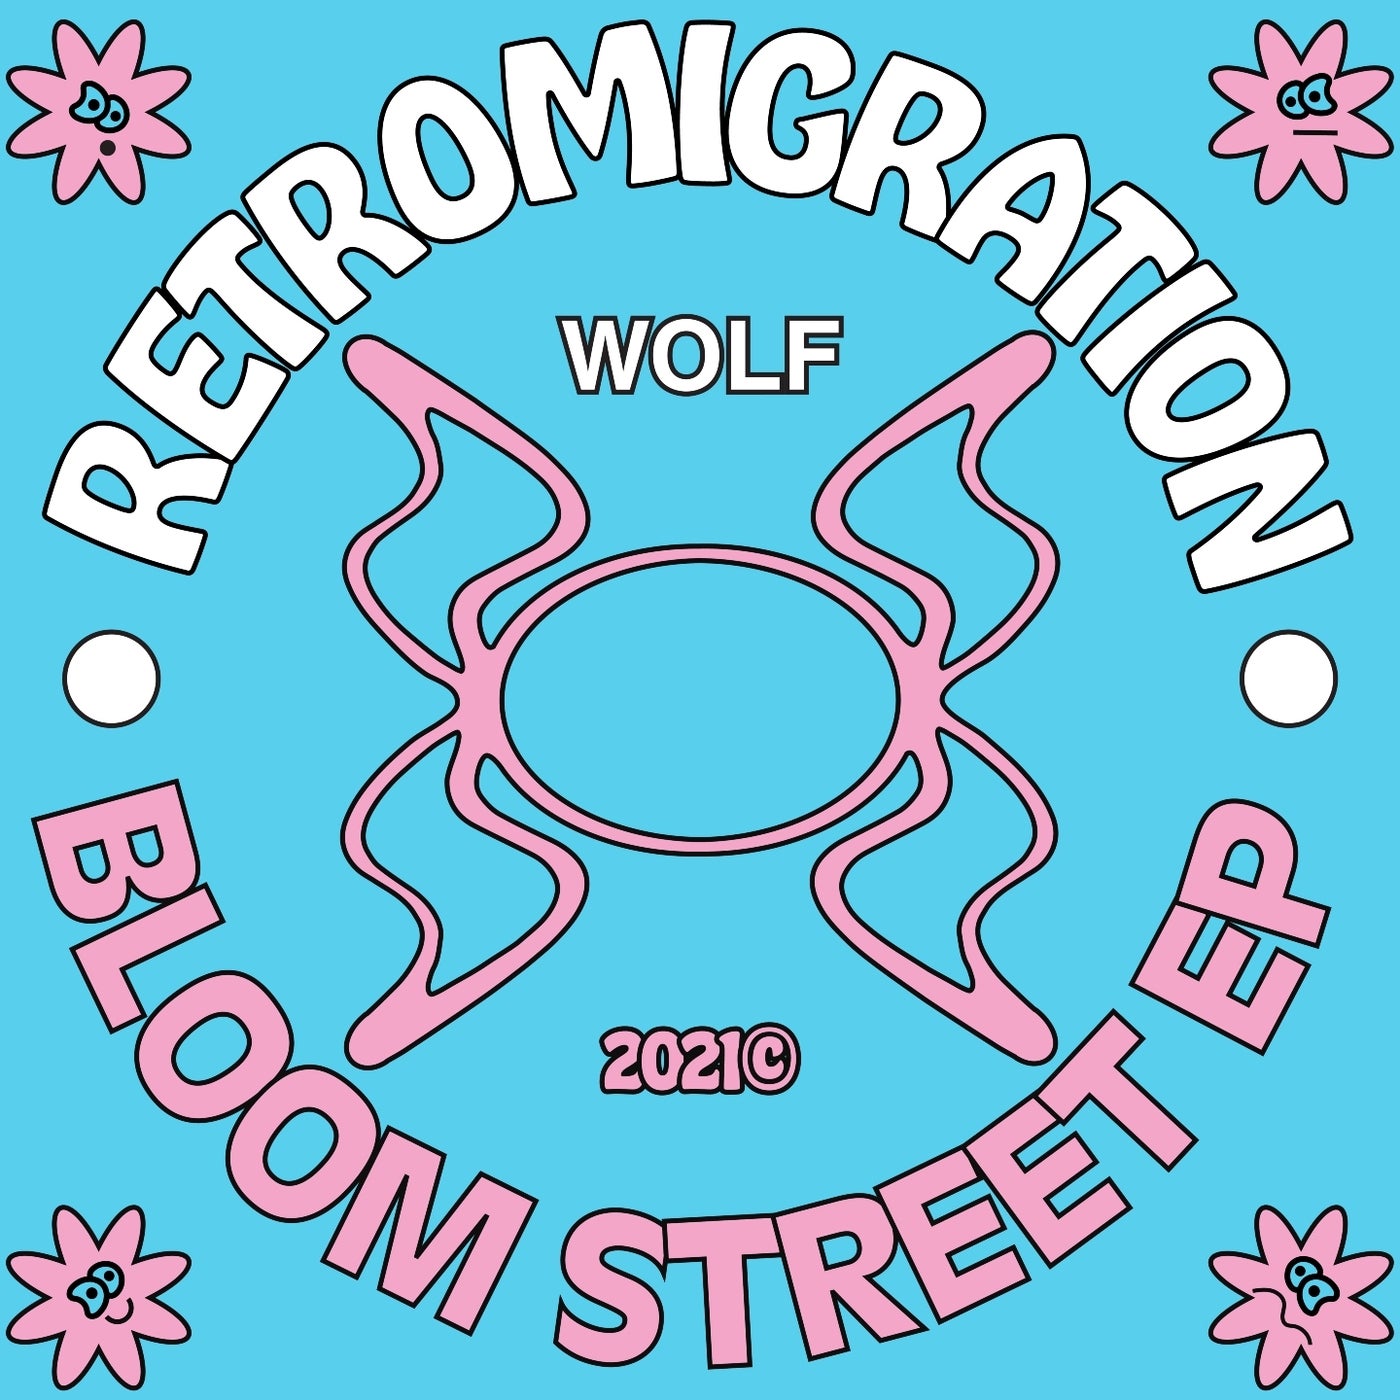 Bloom Street - EP